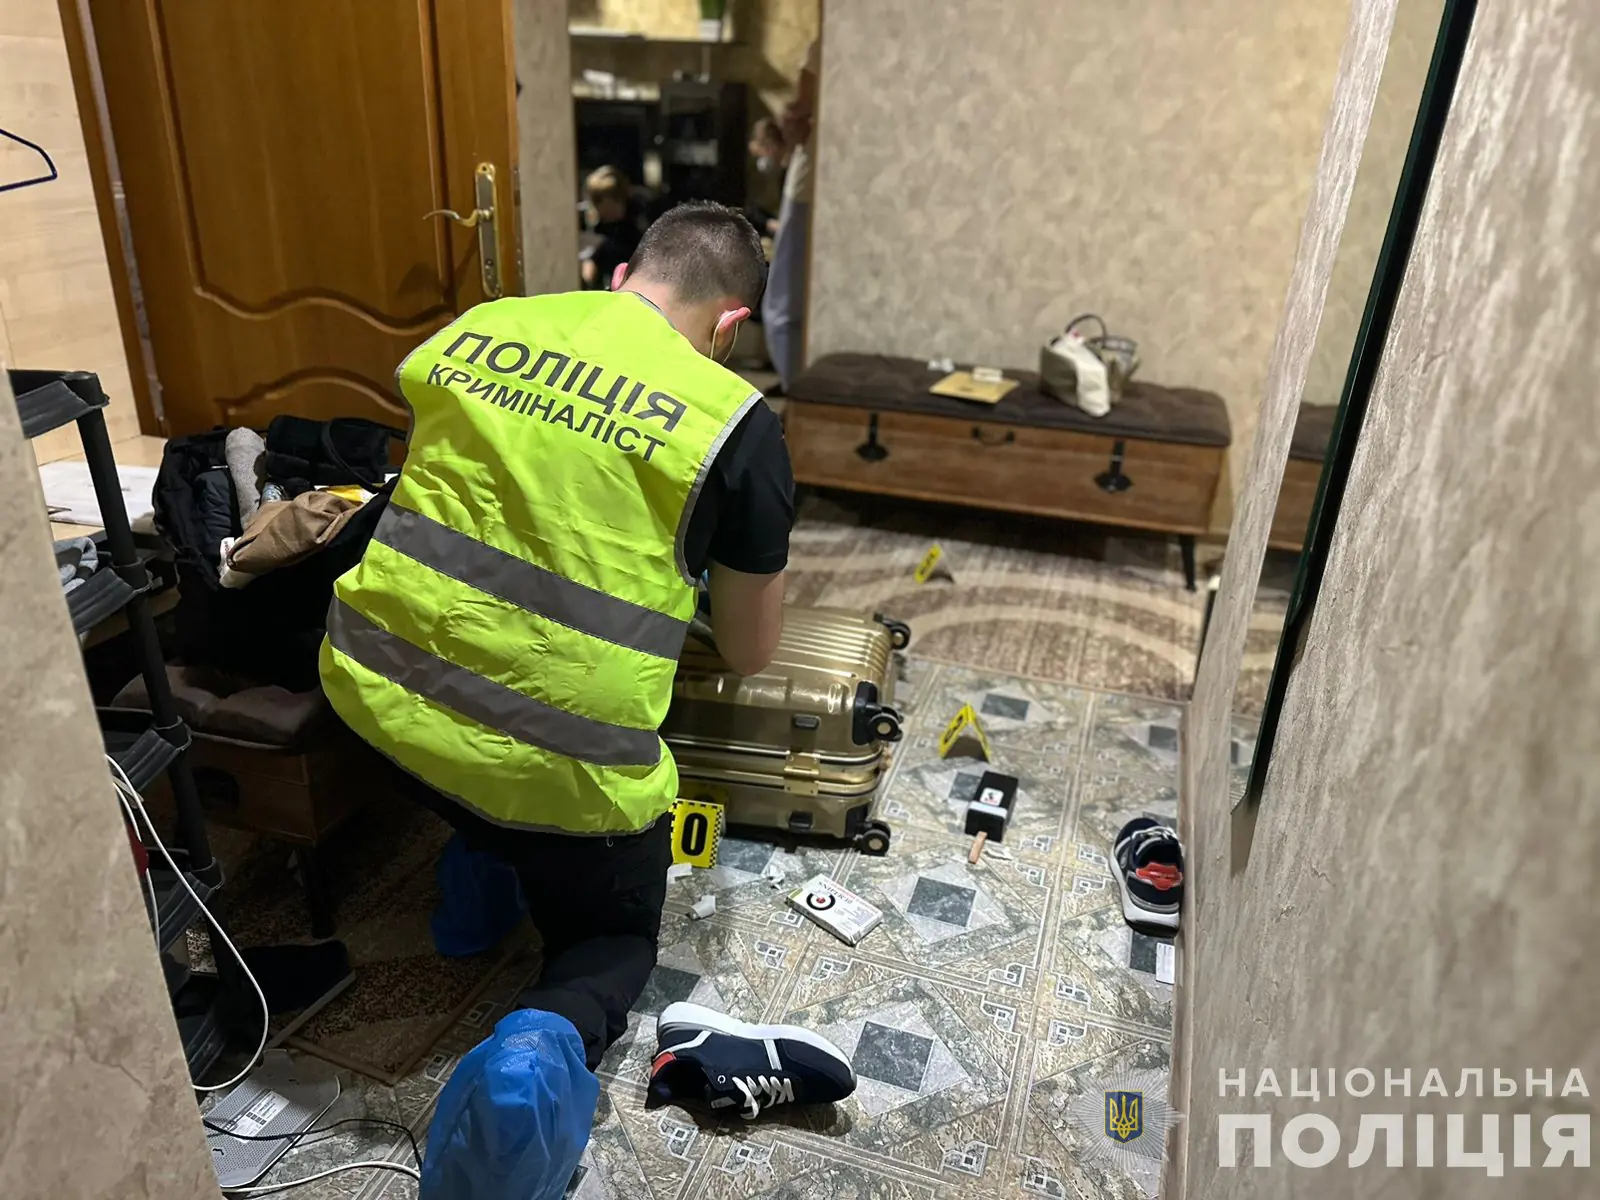 Вбивство в Ужгороді: 35 річний ужгородець задушив свою 23-річну «гостю», яка цілила в нього з пістолету3